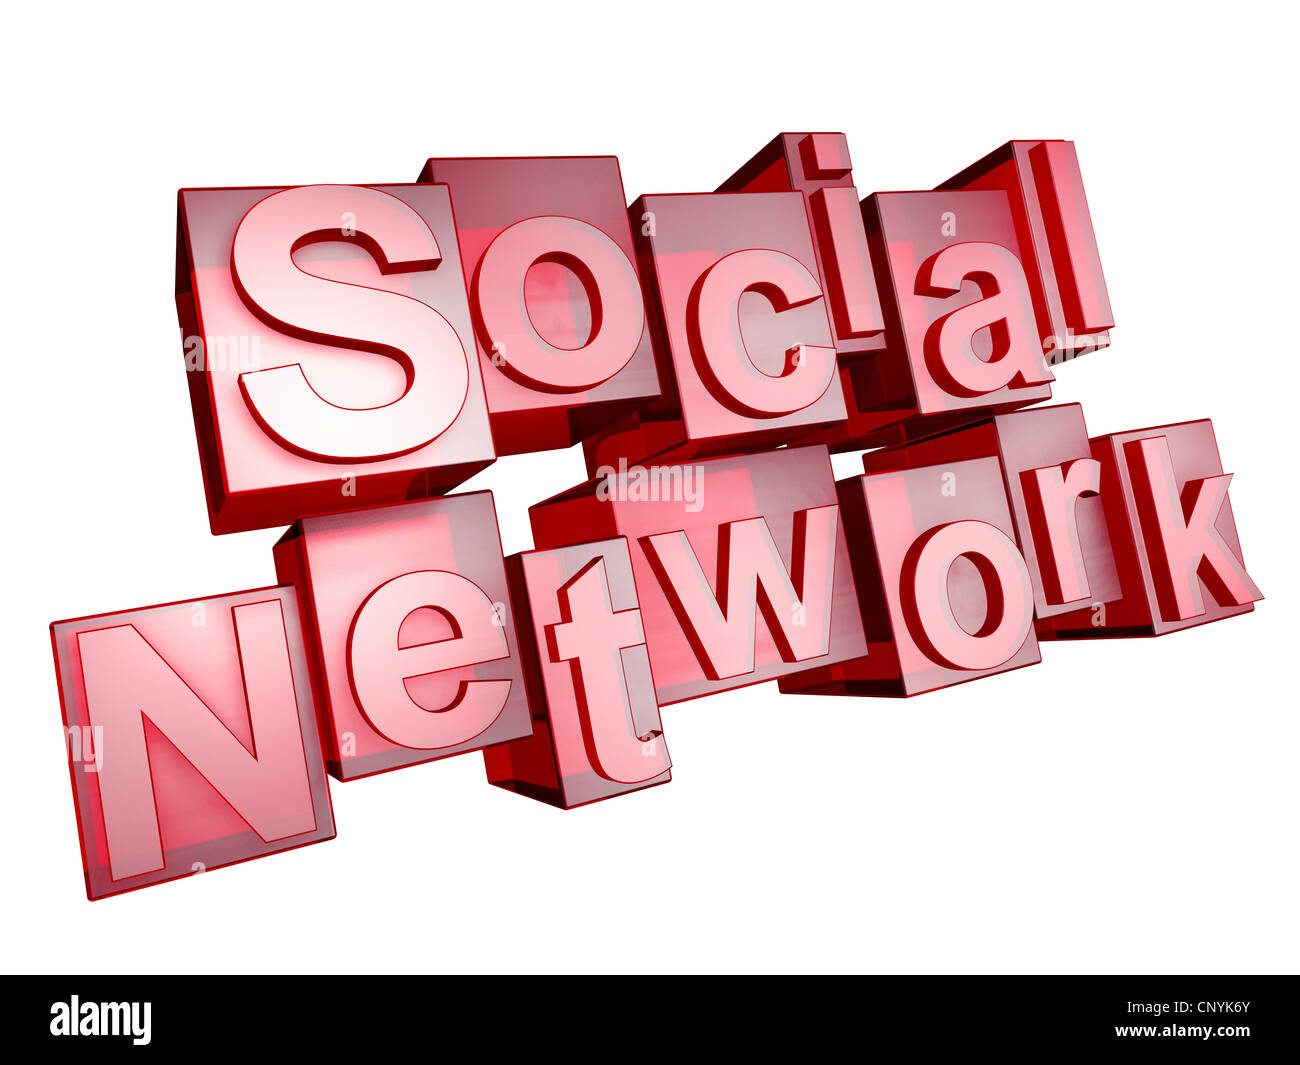 Das Wort "Social Network" in 3D Buchstaben auf weißem Hintergrund Stockfoto